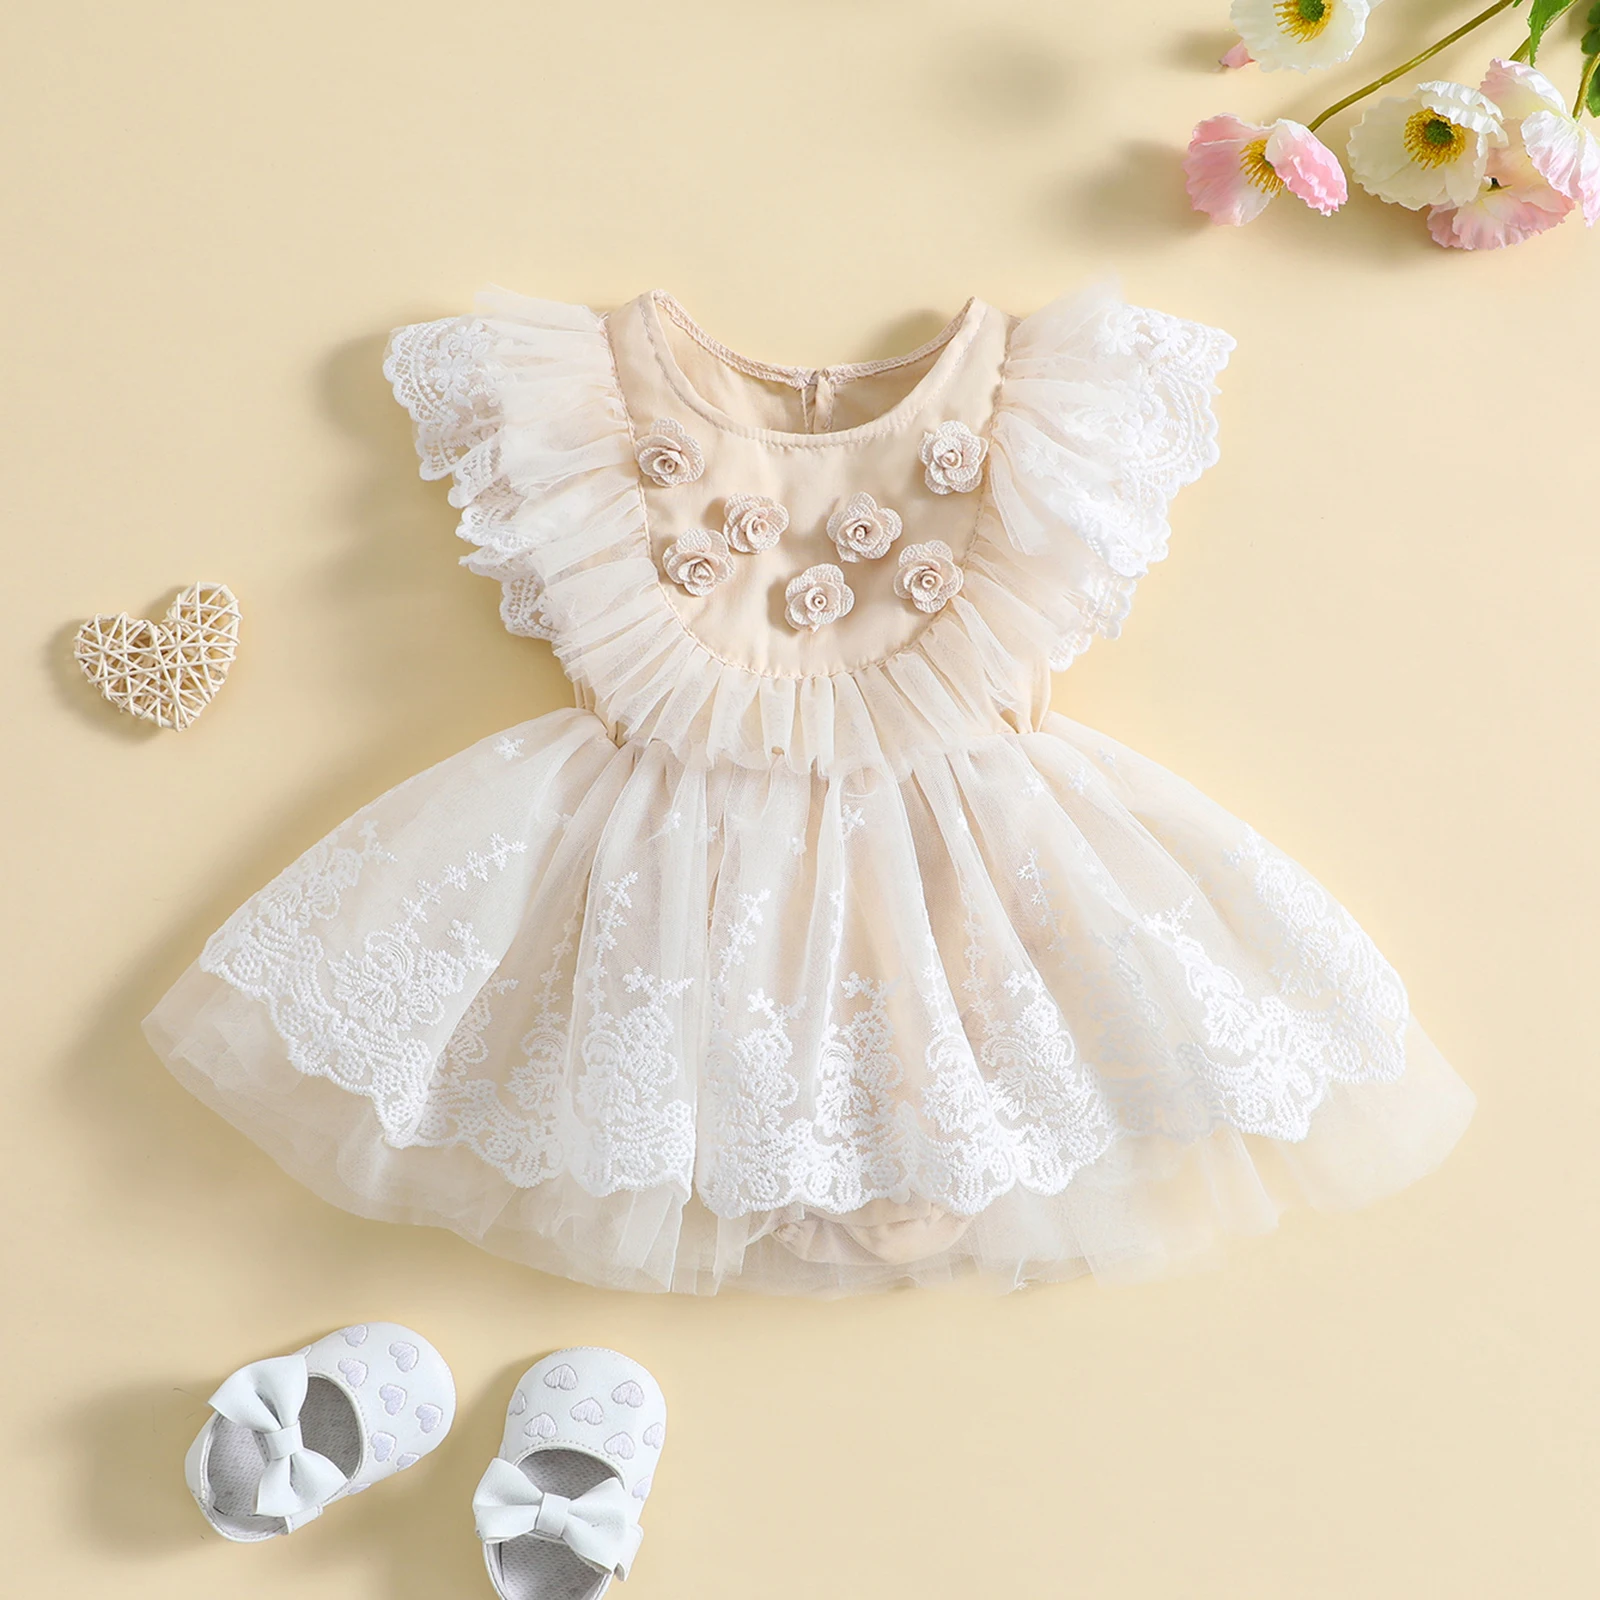 listenwind 0-18 M Yenidoğan Bebek Bebek Kız Elbise Prenses Dantel Çiçek Tutu Parti Doğum Günü Gelinlik Kızlar İçin